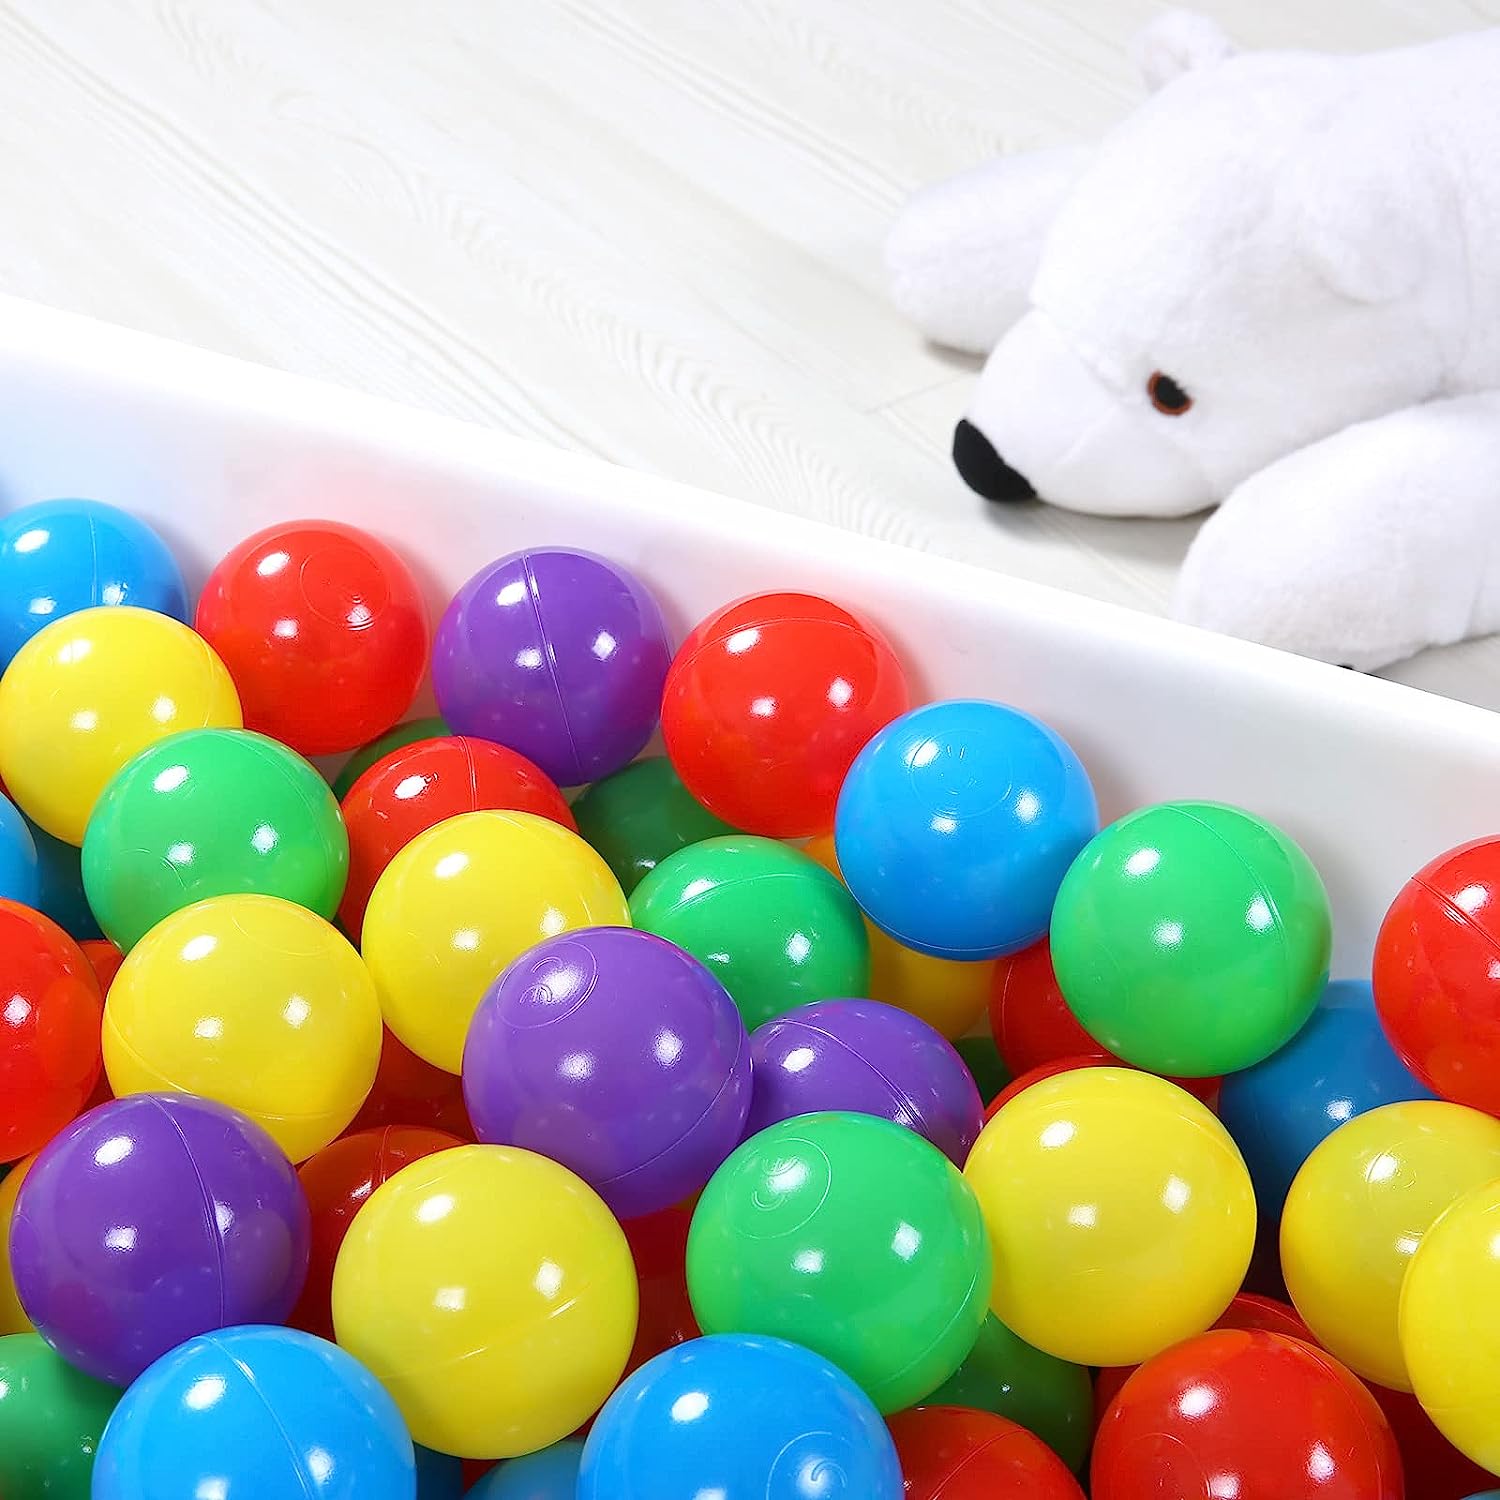 50 كرة لحوض اللعب - كور بلاستيك ناعمة للاطفال الرضع والاطفال الصغار من عمر سنة الى 5 سنوات، 5 الوان، 50 قطعة